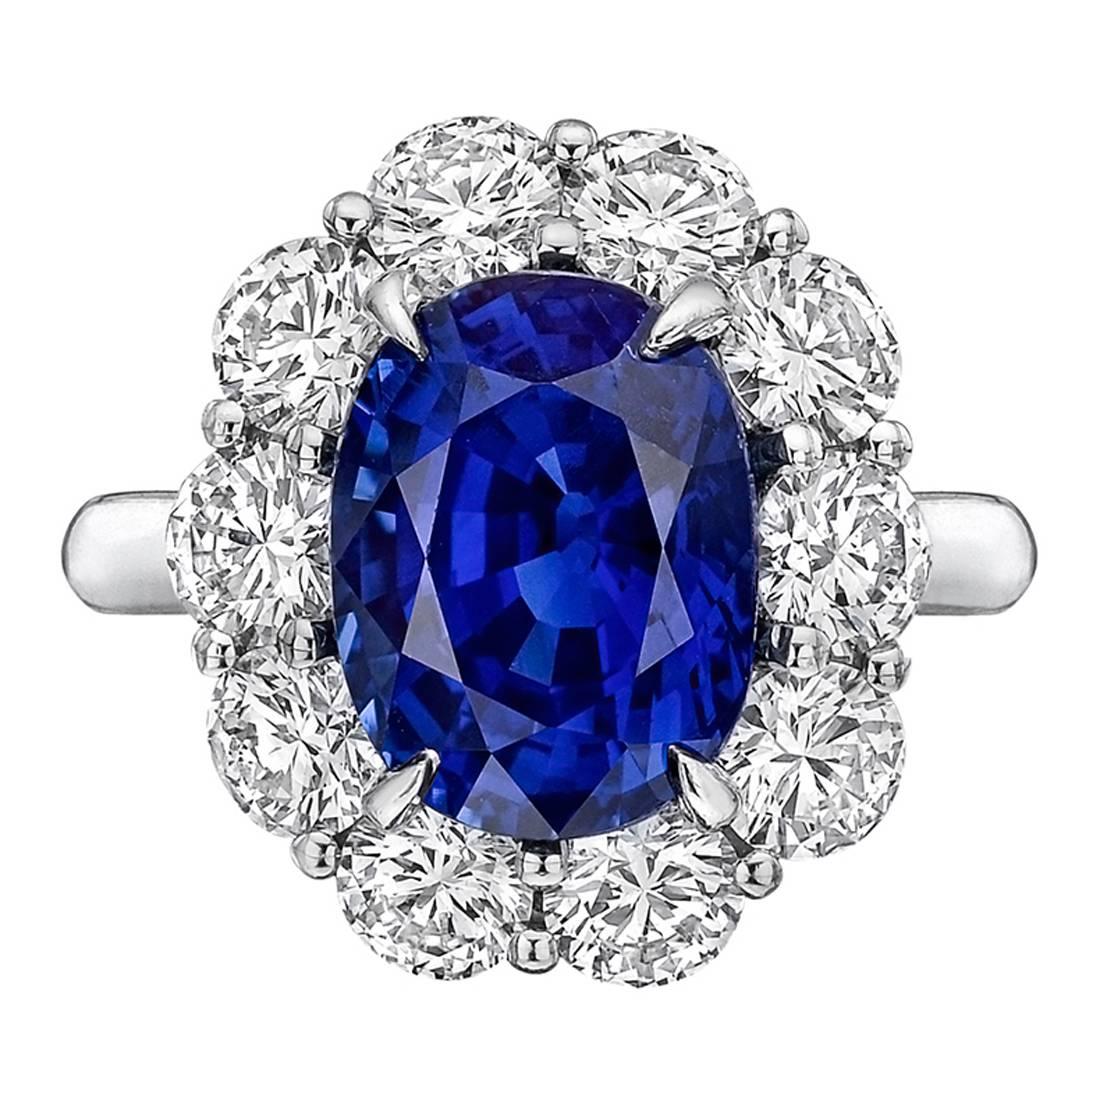 5.45 Carat Sapphire Diamond Cluster Ring